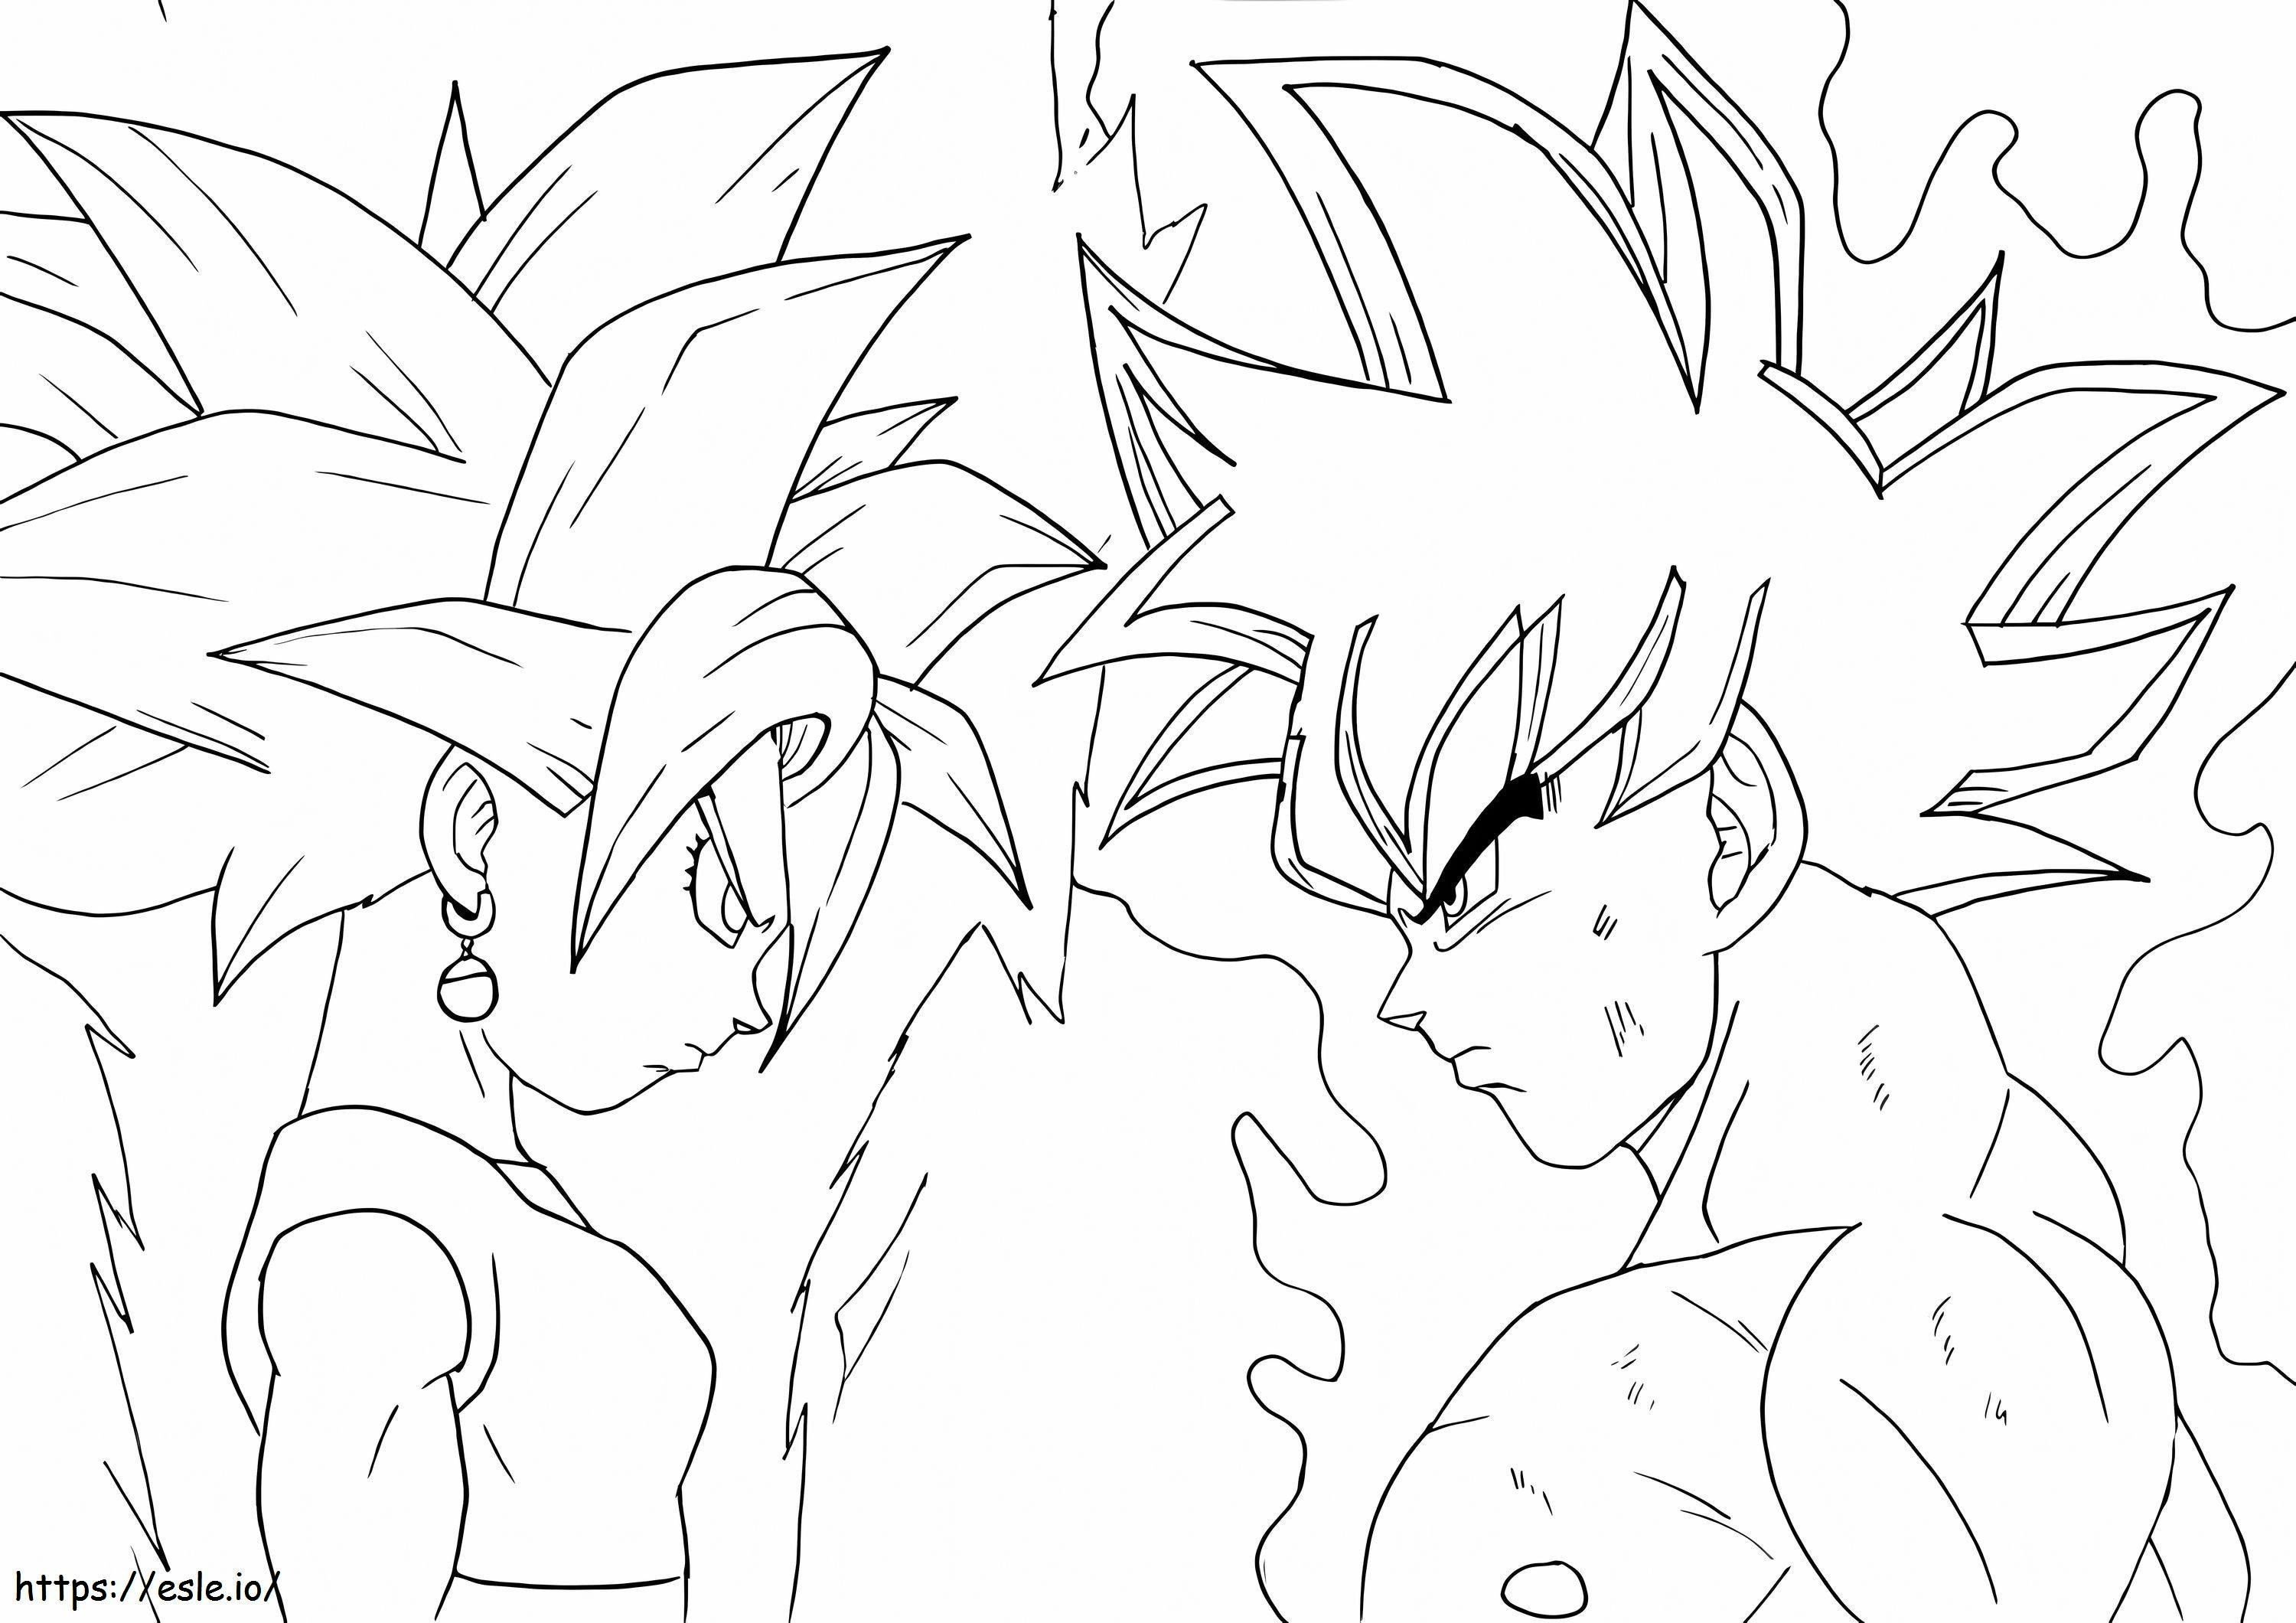 Goku And Kefla coloring page